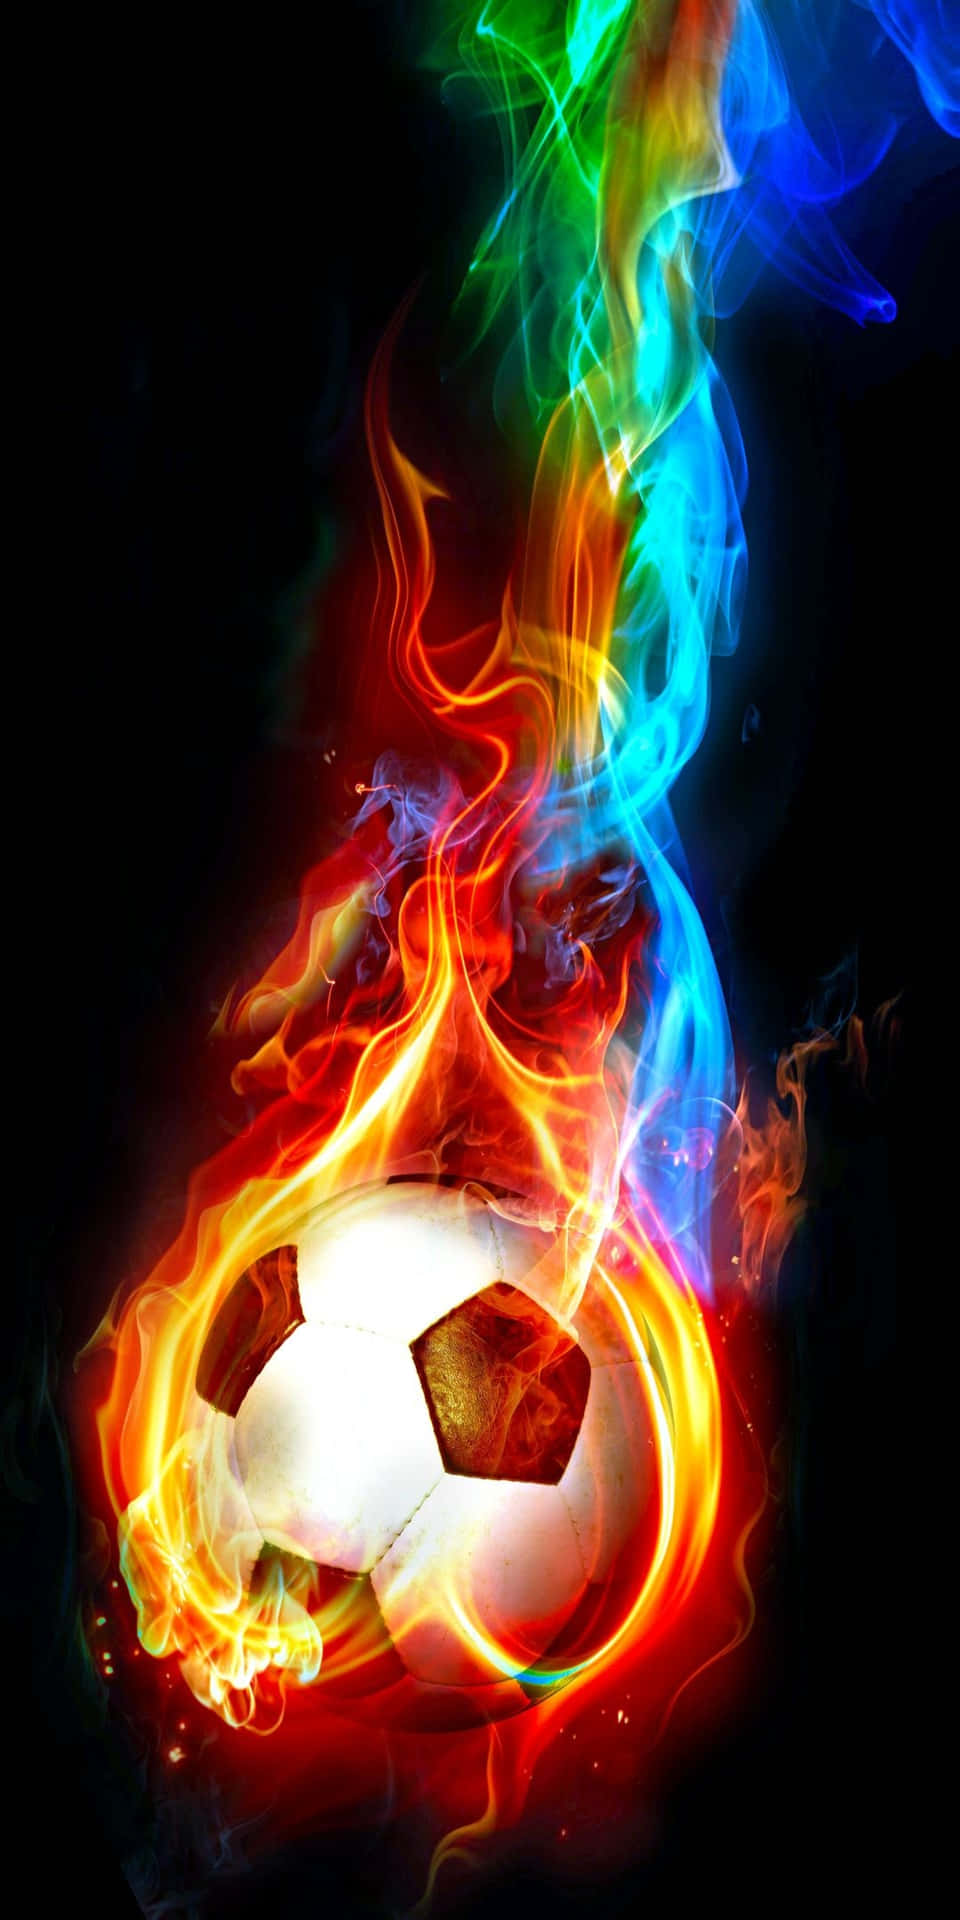 En fodbold i flammer på en sort baggrund